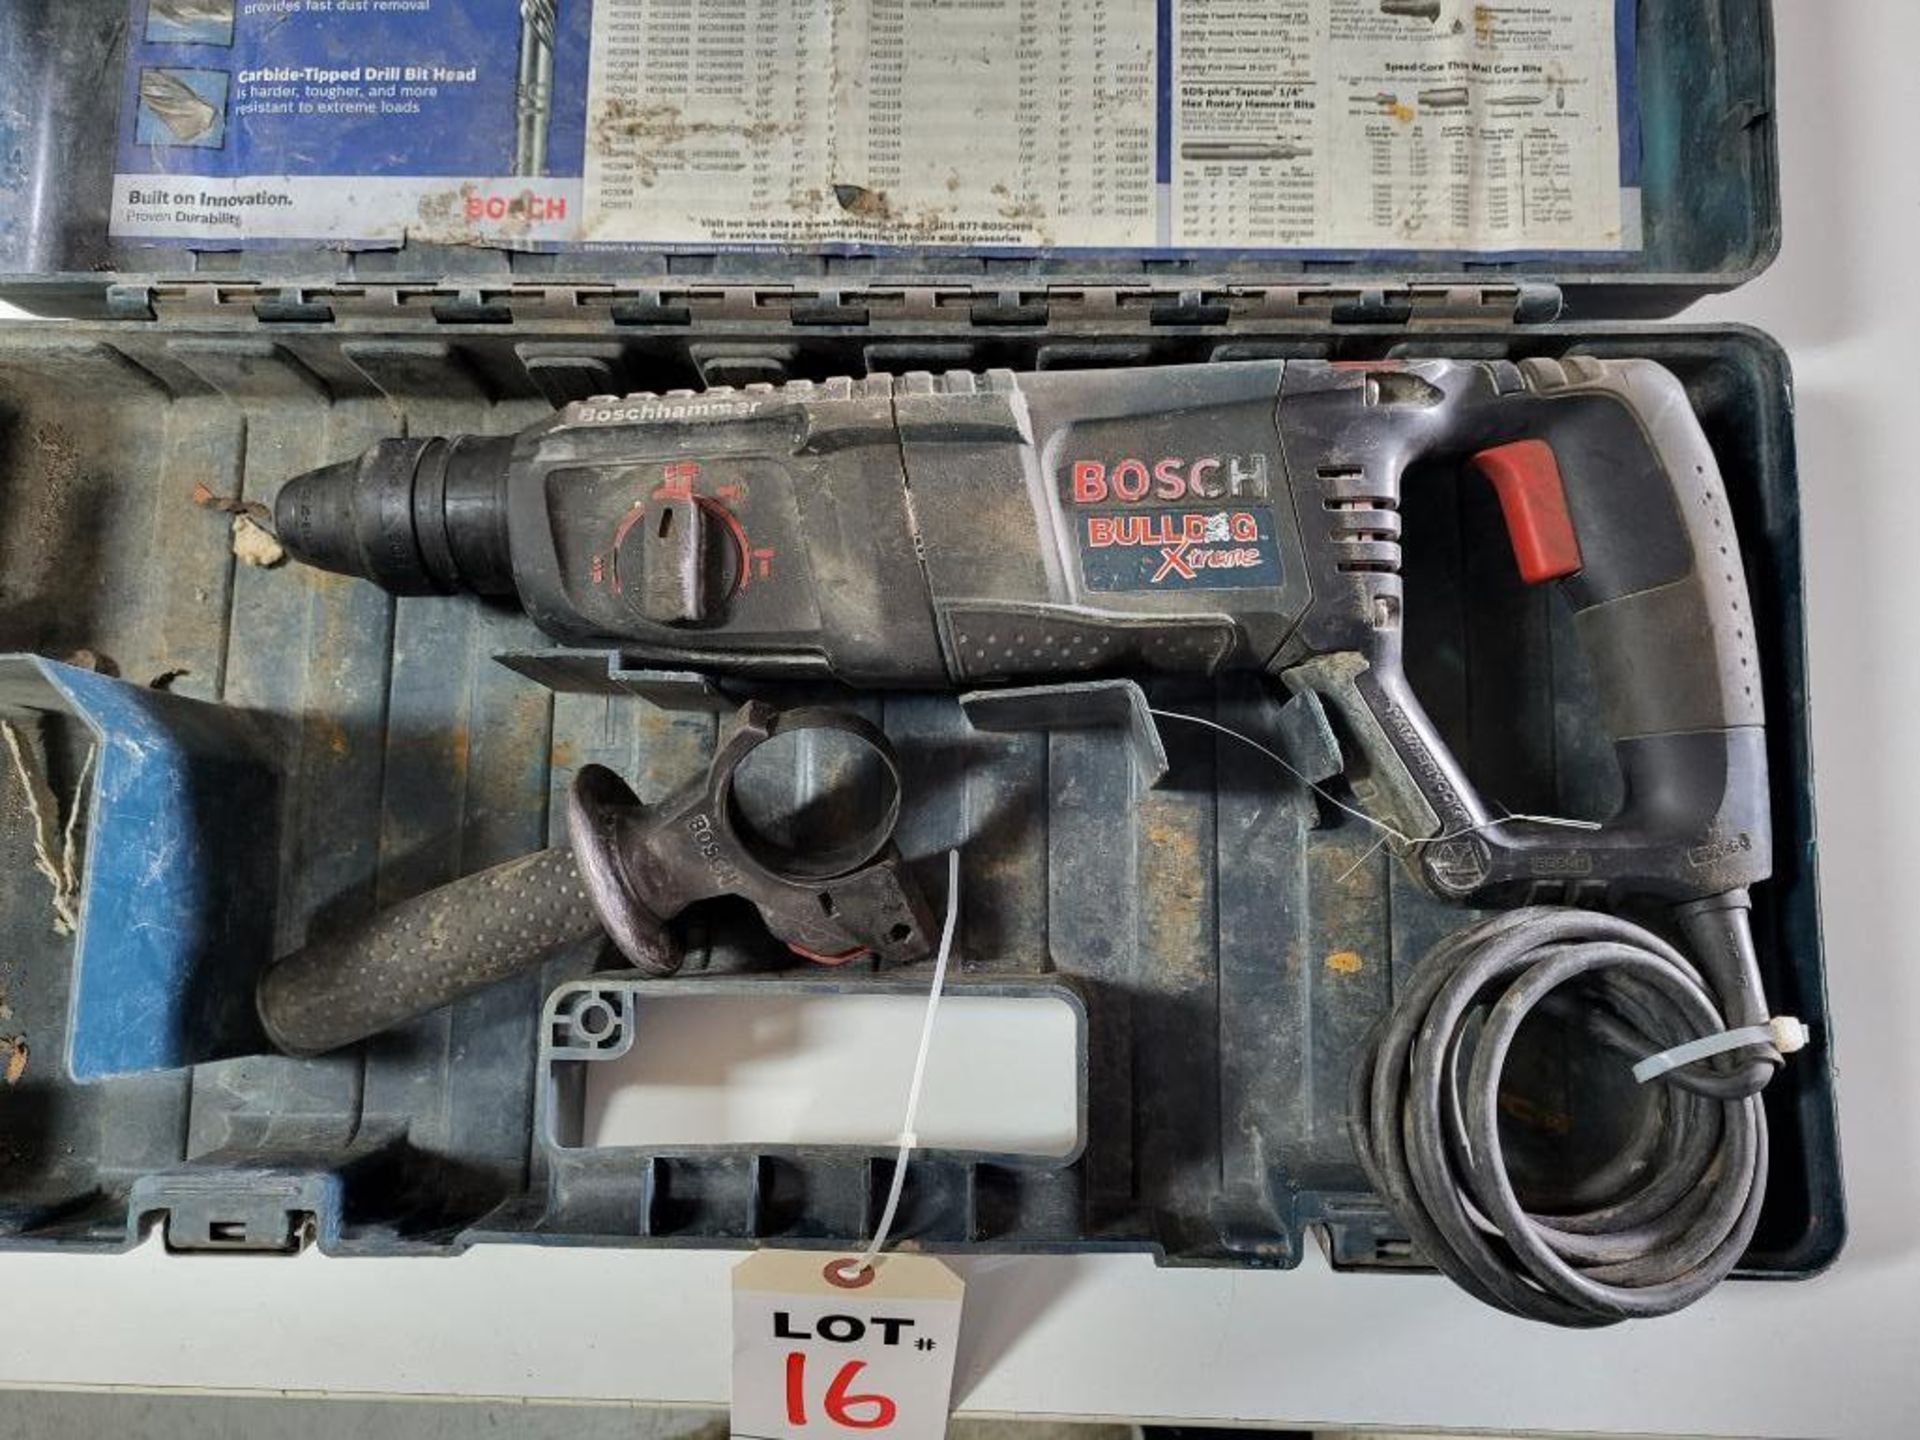 Bosch Bulldog Xtreme Hammer Drill IN CASE M/N 11255VSR - Bild 2 aus 3